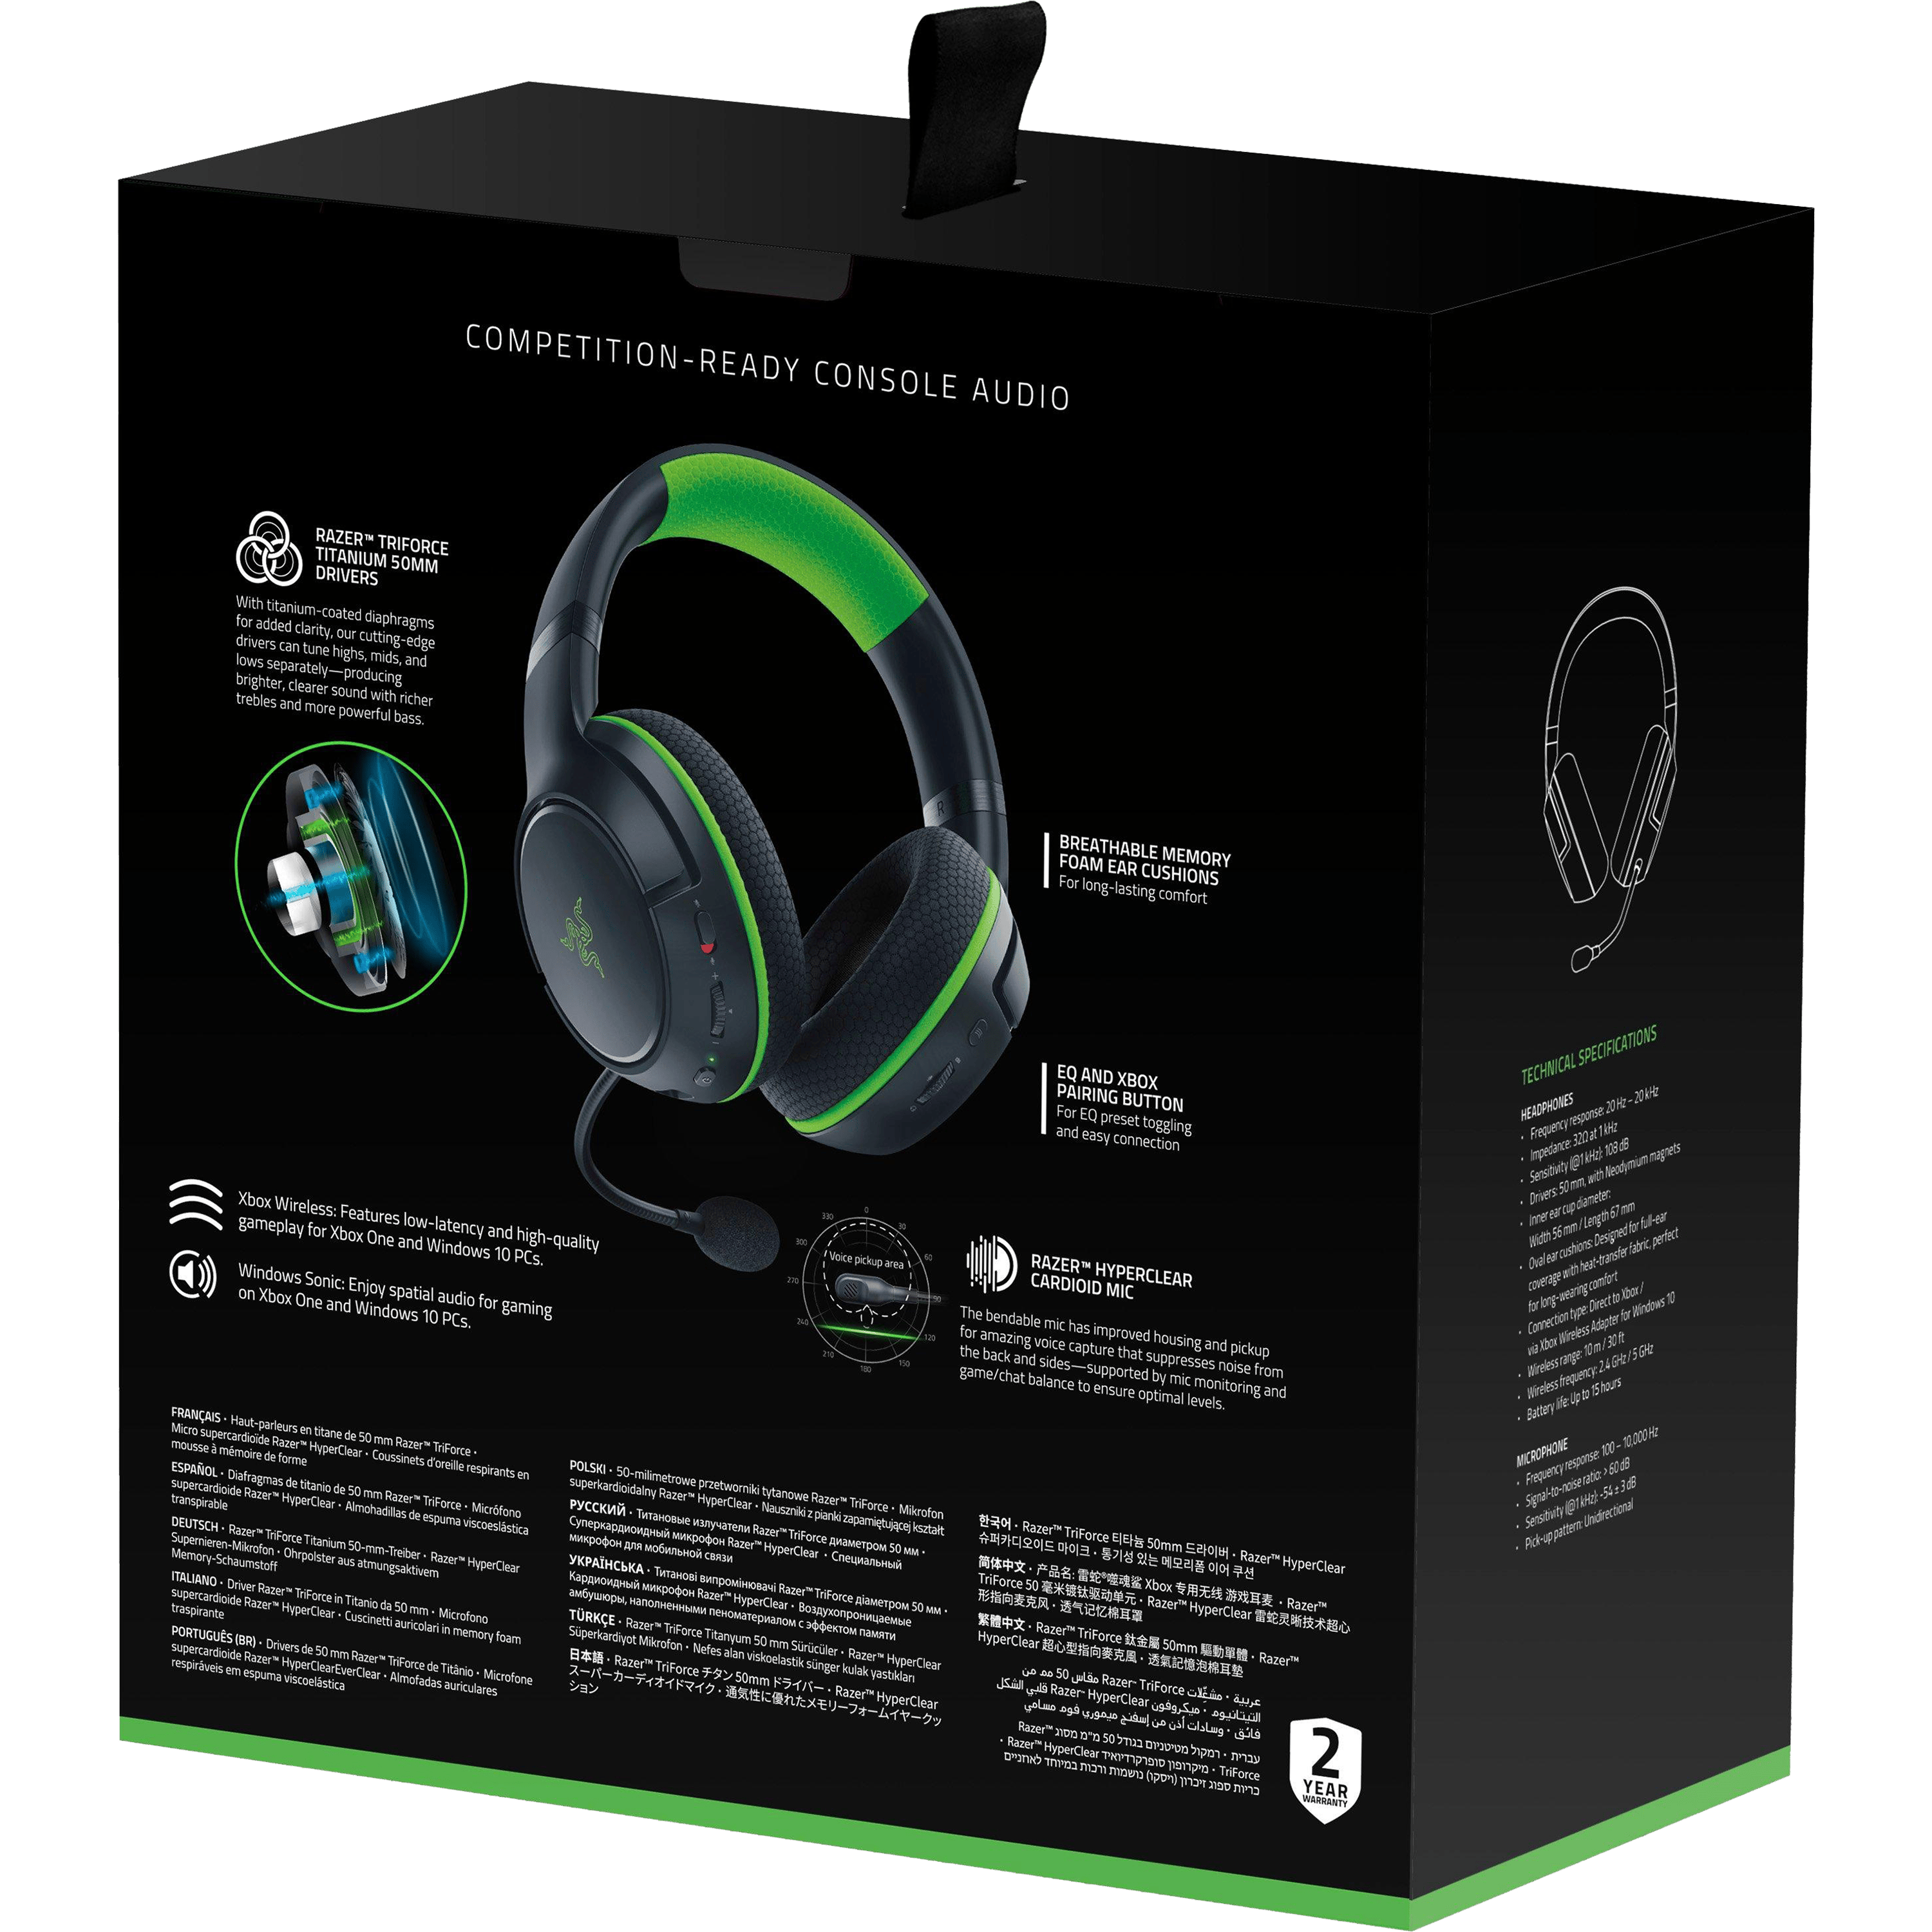 אוזניות גיימינג אלחוטיות Razer Kaira For Xbox - צבע שחור וירוק שנתיים אחריות ע